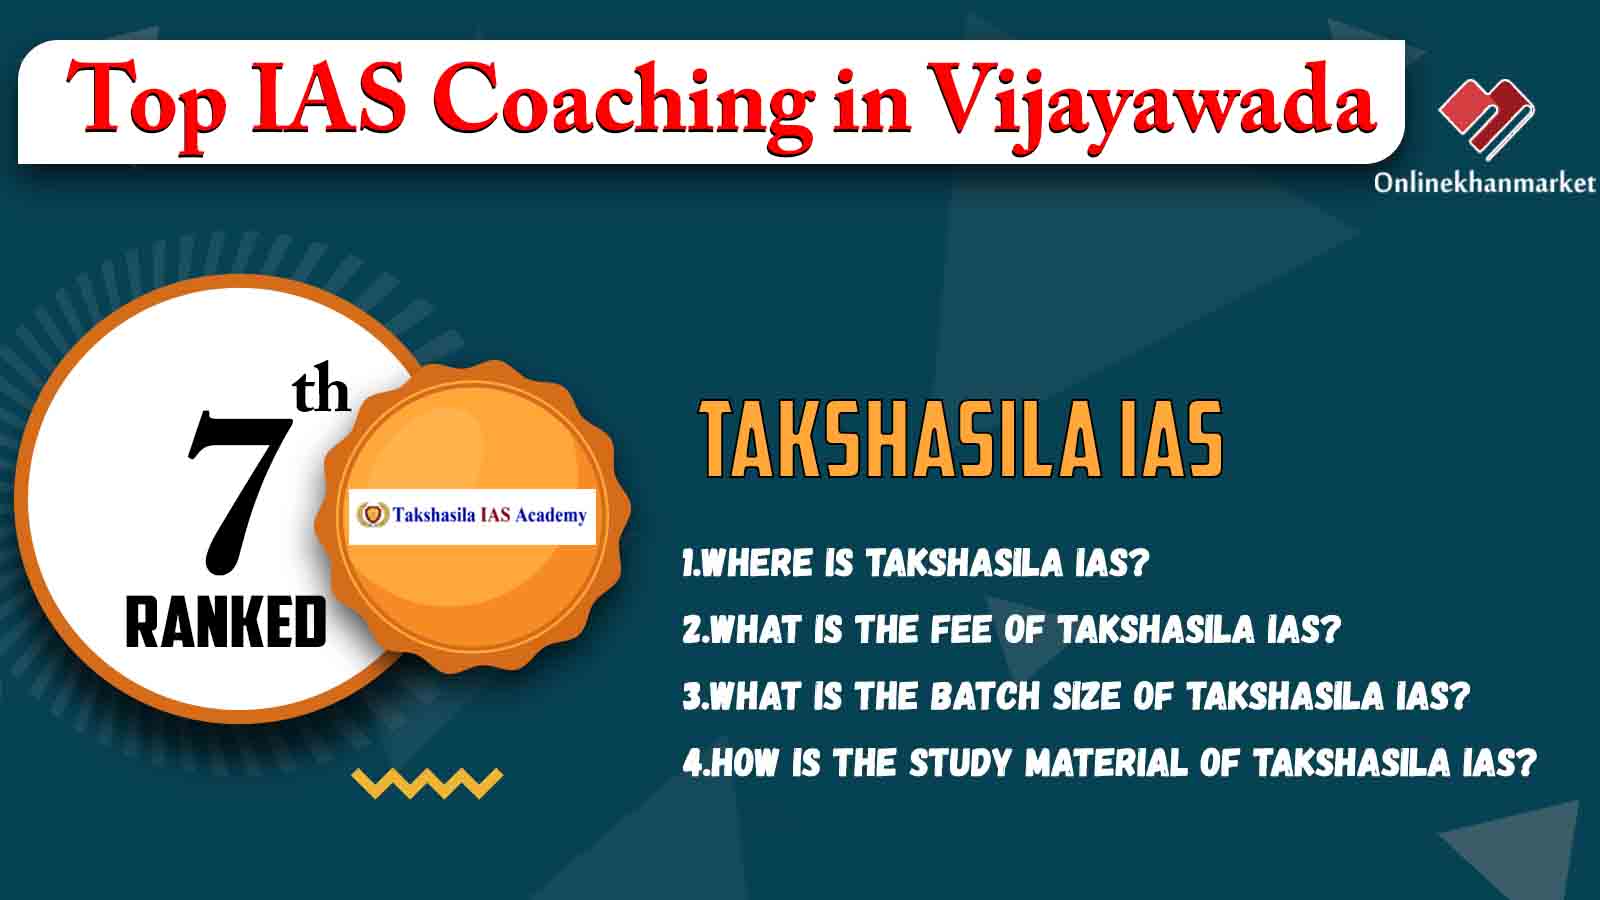 Top IAS Coaching in Vijayawada